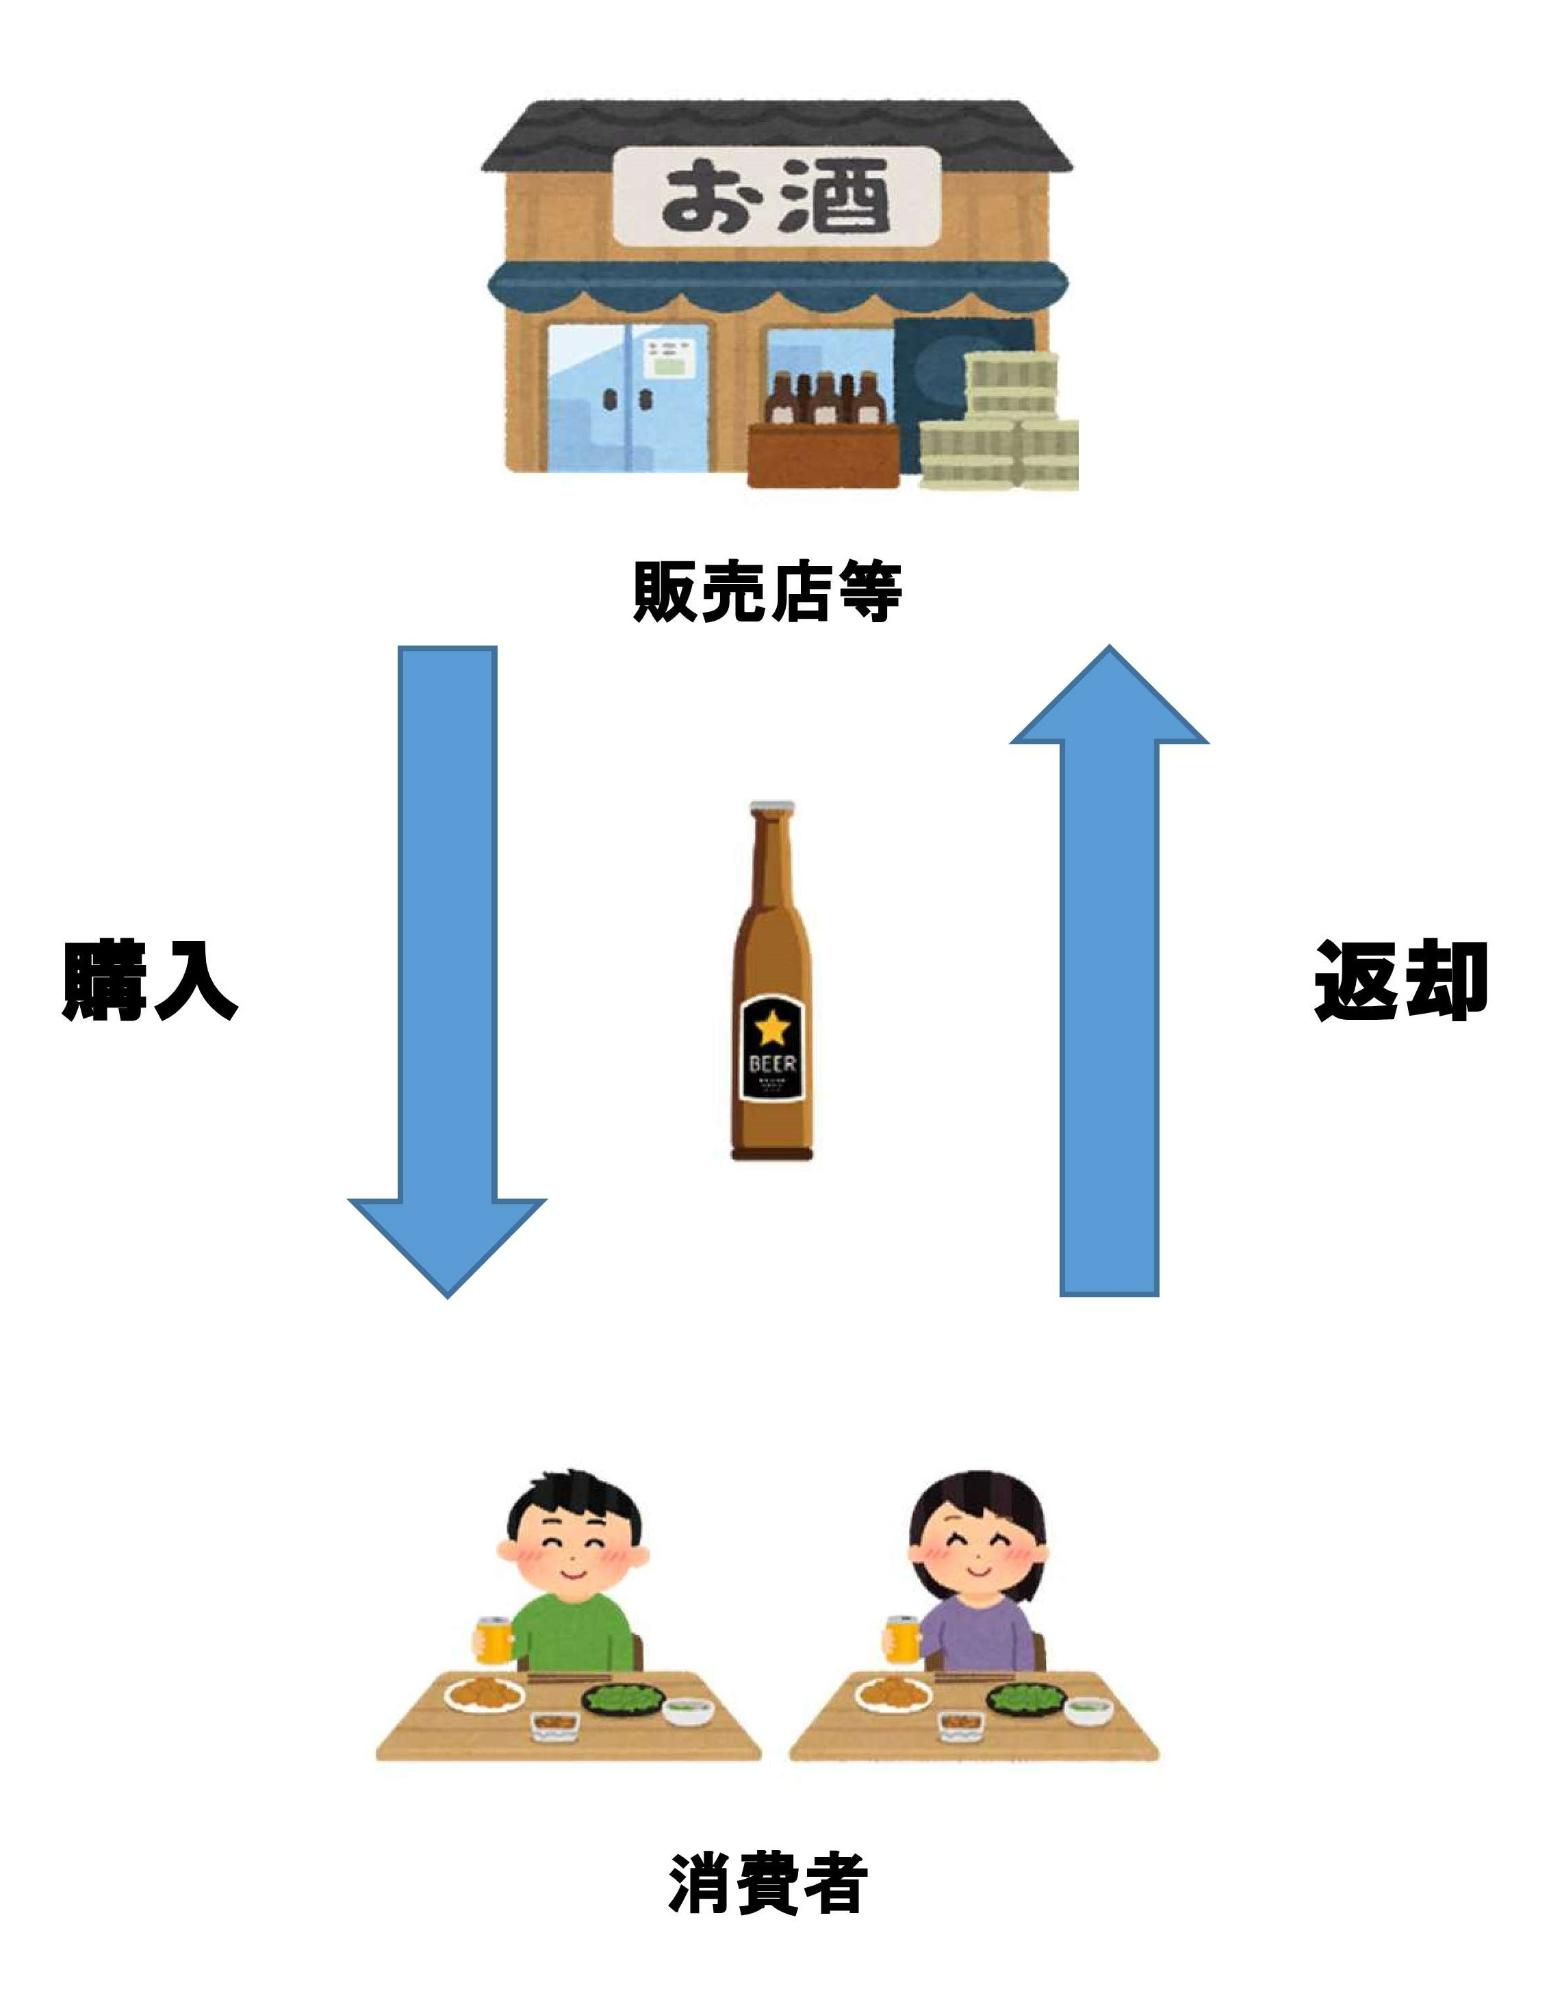 販売店等から商品を消費者が購入し、消費者がビンを販売店に返却する図